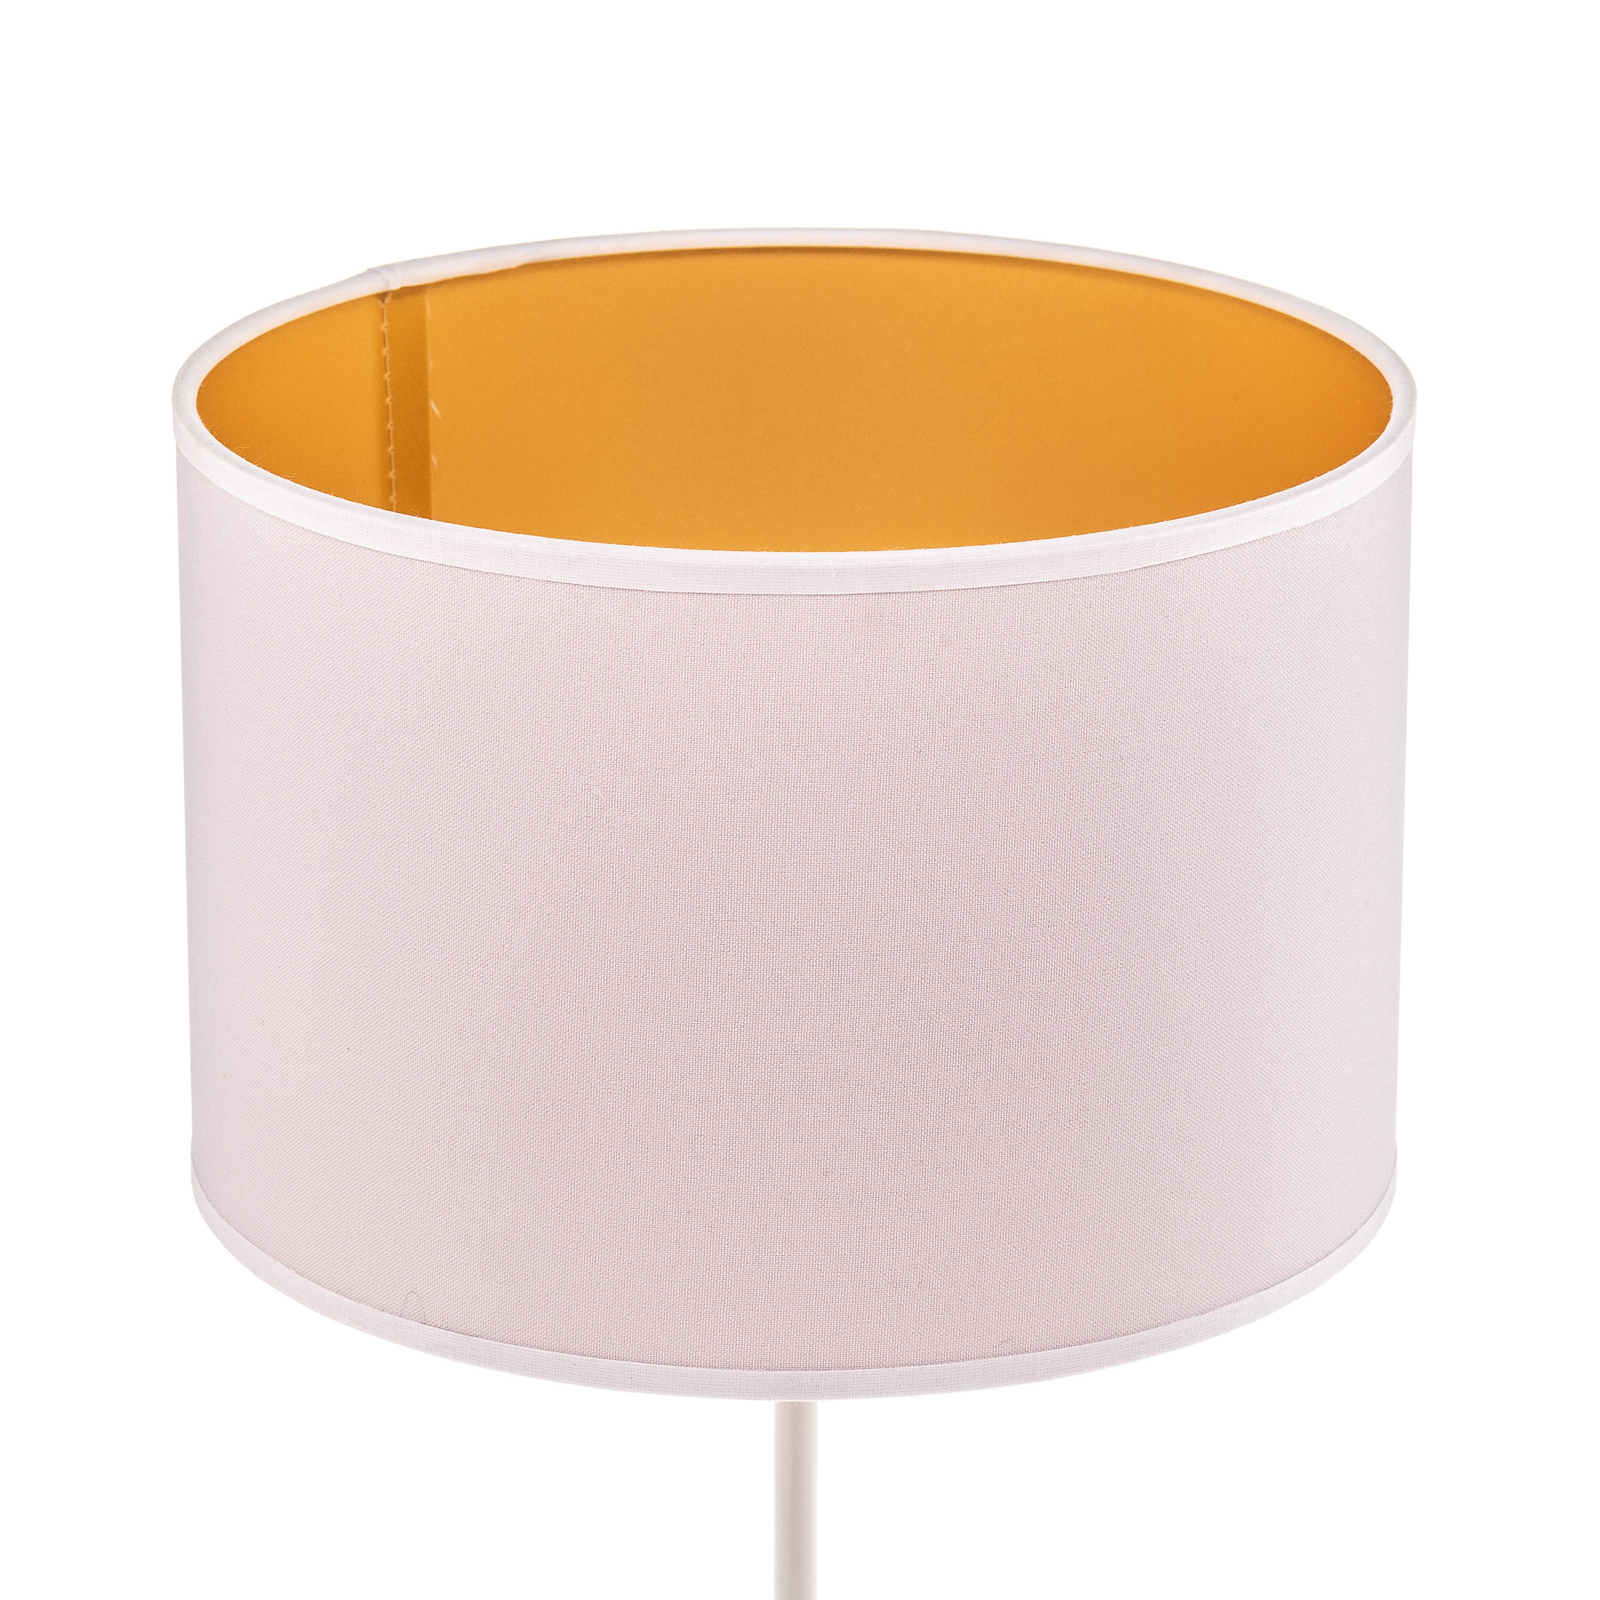 Roller asztali lámpa, fehér/arany, 50 cm magas